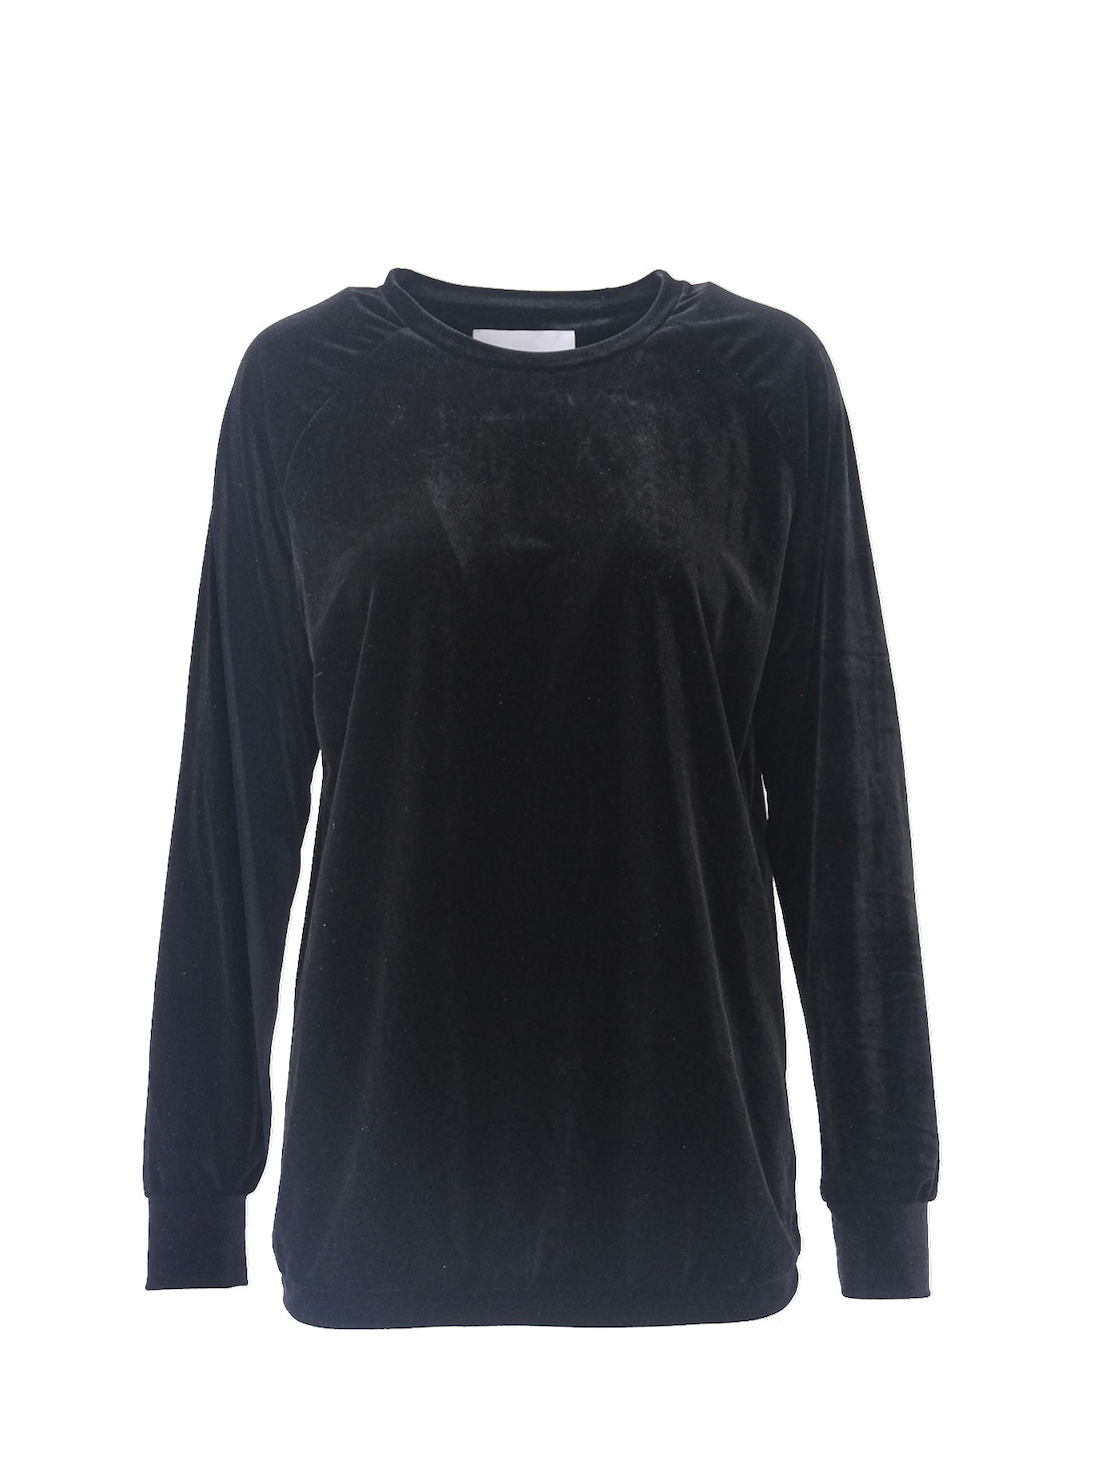 FLORA - round-necked sweatshirt in black chenille